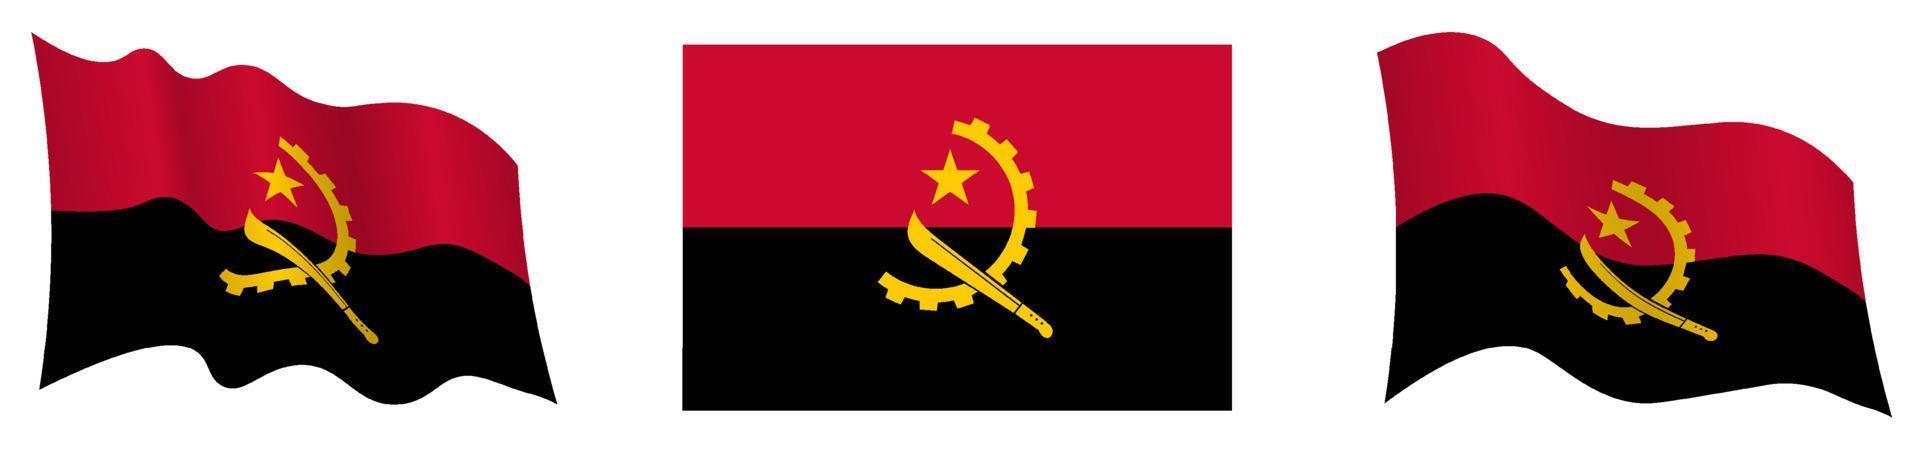 Angola-Flagge in statischer Position und in Bewegung, flatternd im Wind in genauen Farben und Größen, auf weißem Hintergrund vektor